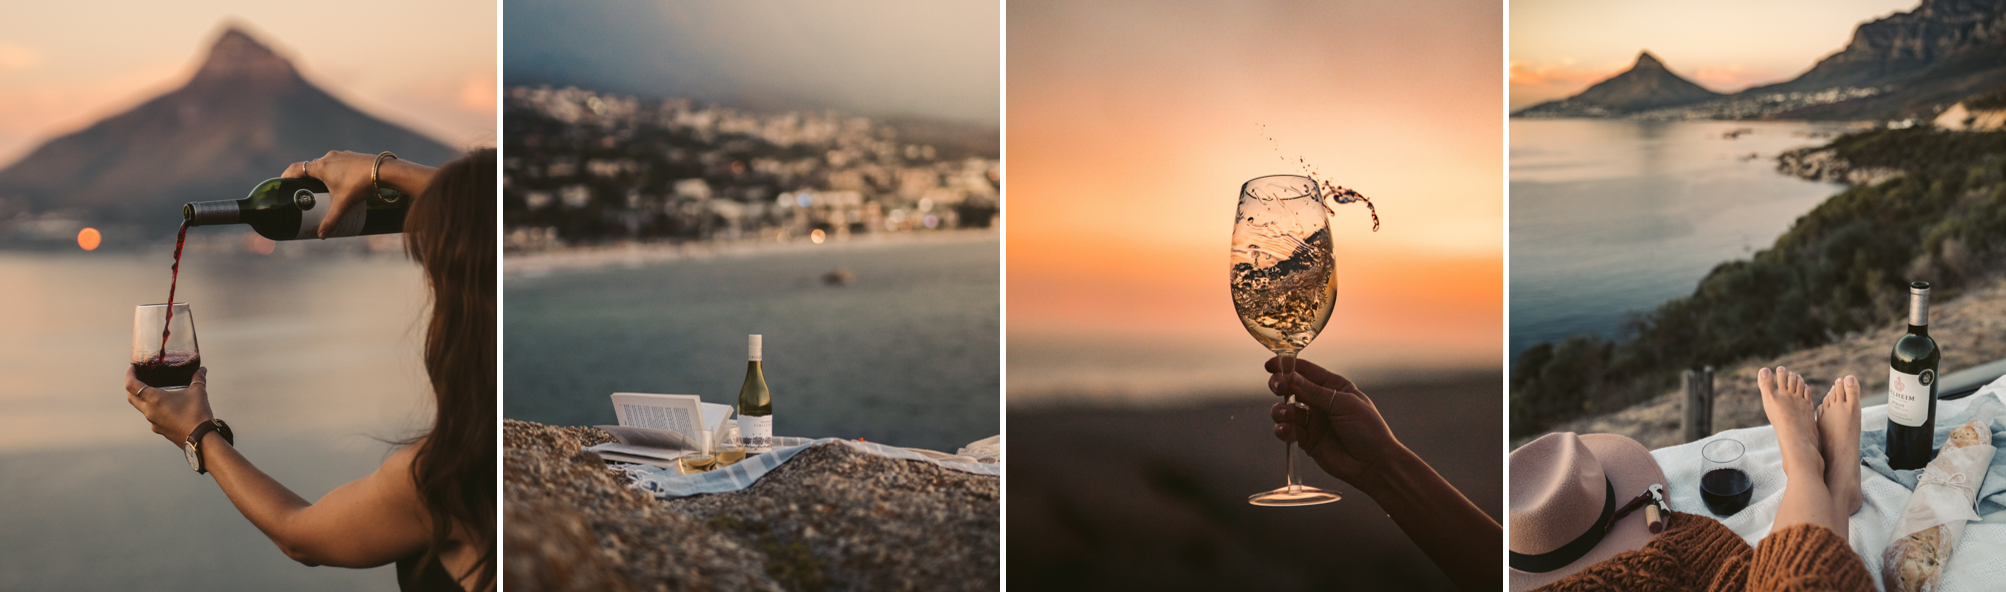 Vier stimmungsvolle Wein-Impressionen am Meer